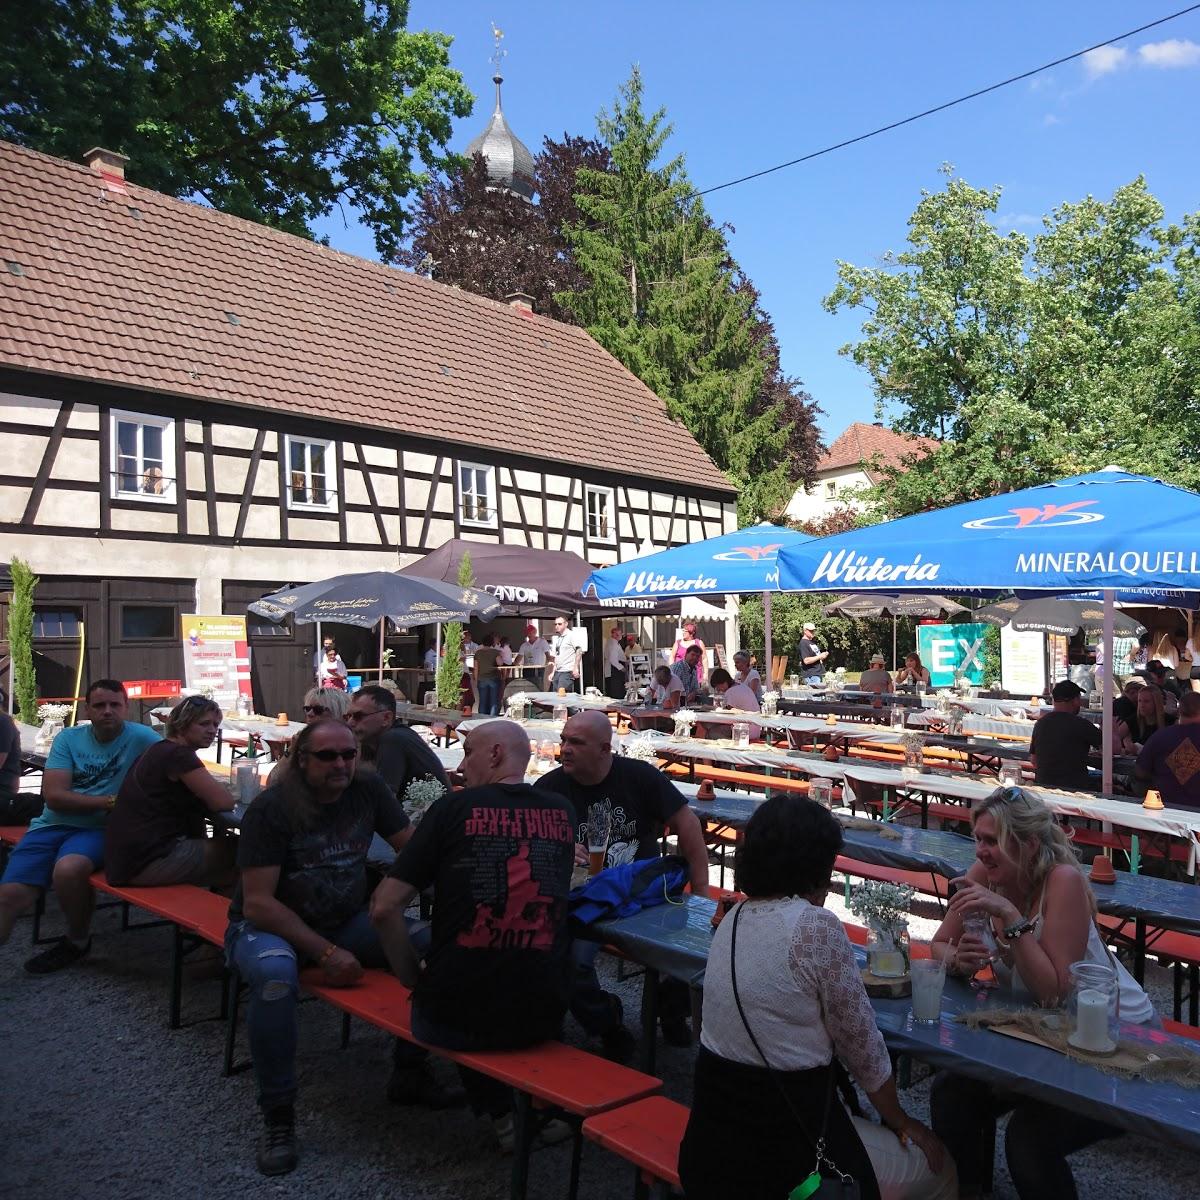 Restaurant "G. Ortiz" in Siegelsbach